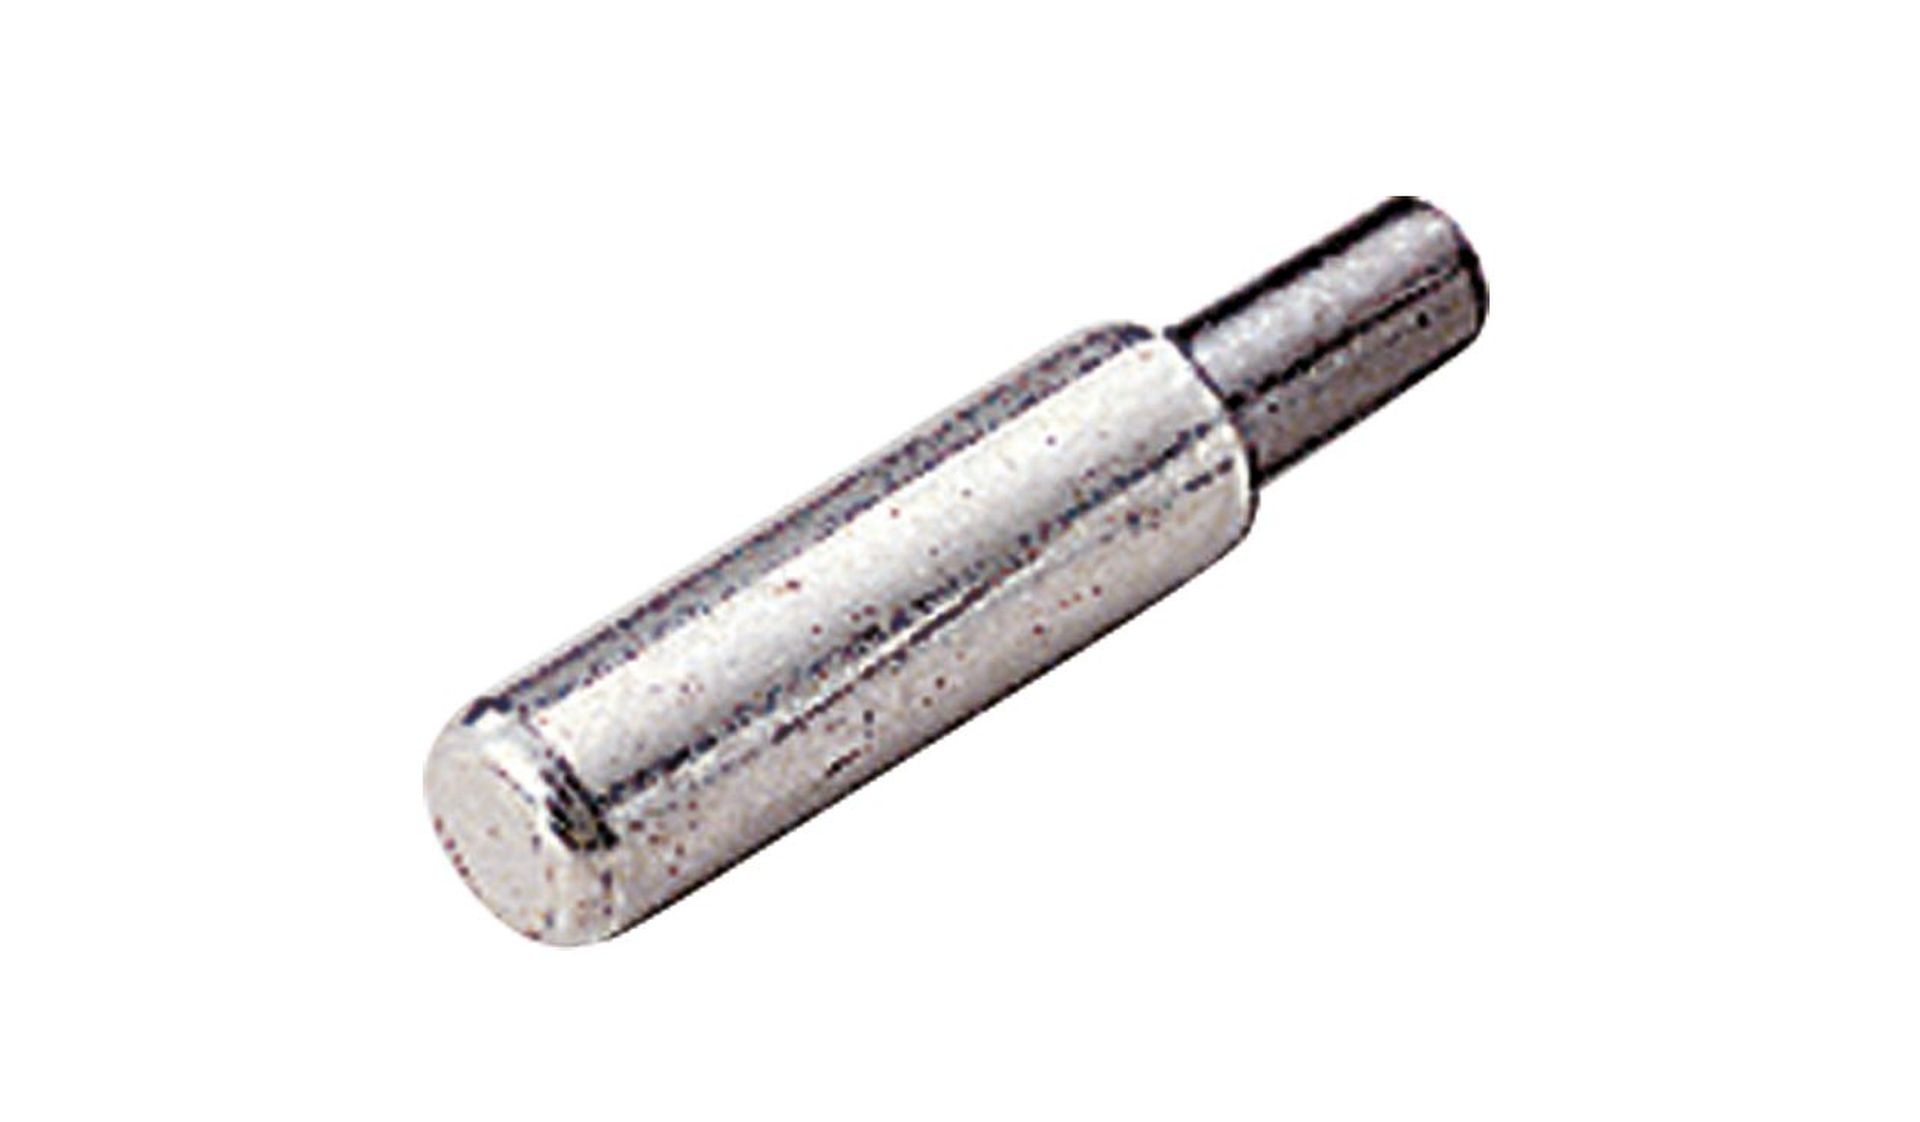 LGB 63120 - Stromabnehmer-Kohlen, 4x 14mm, 4x 16mm